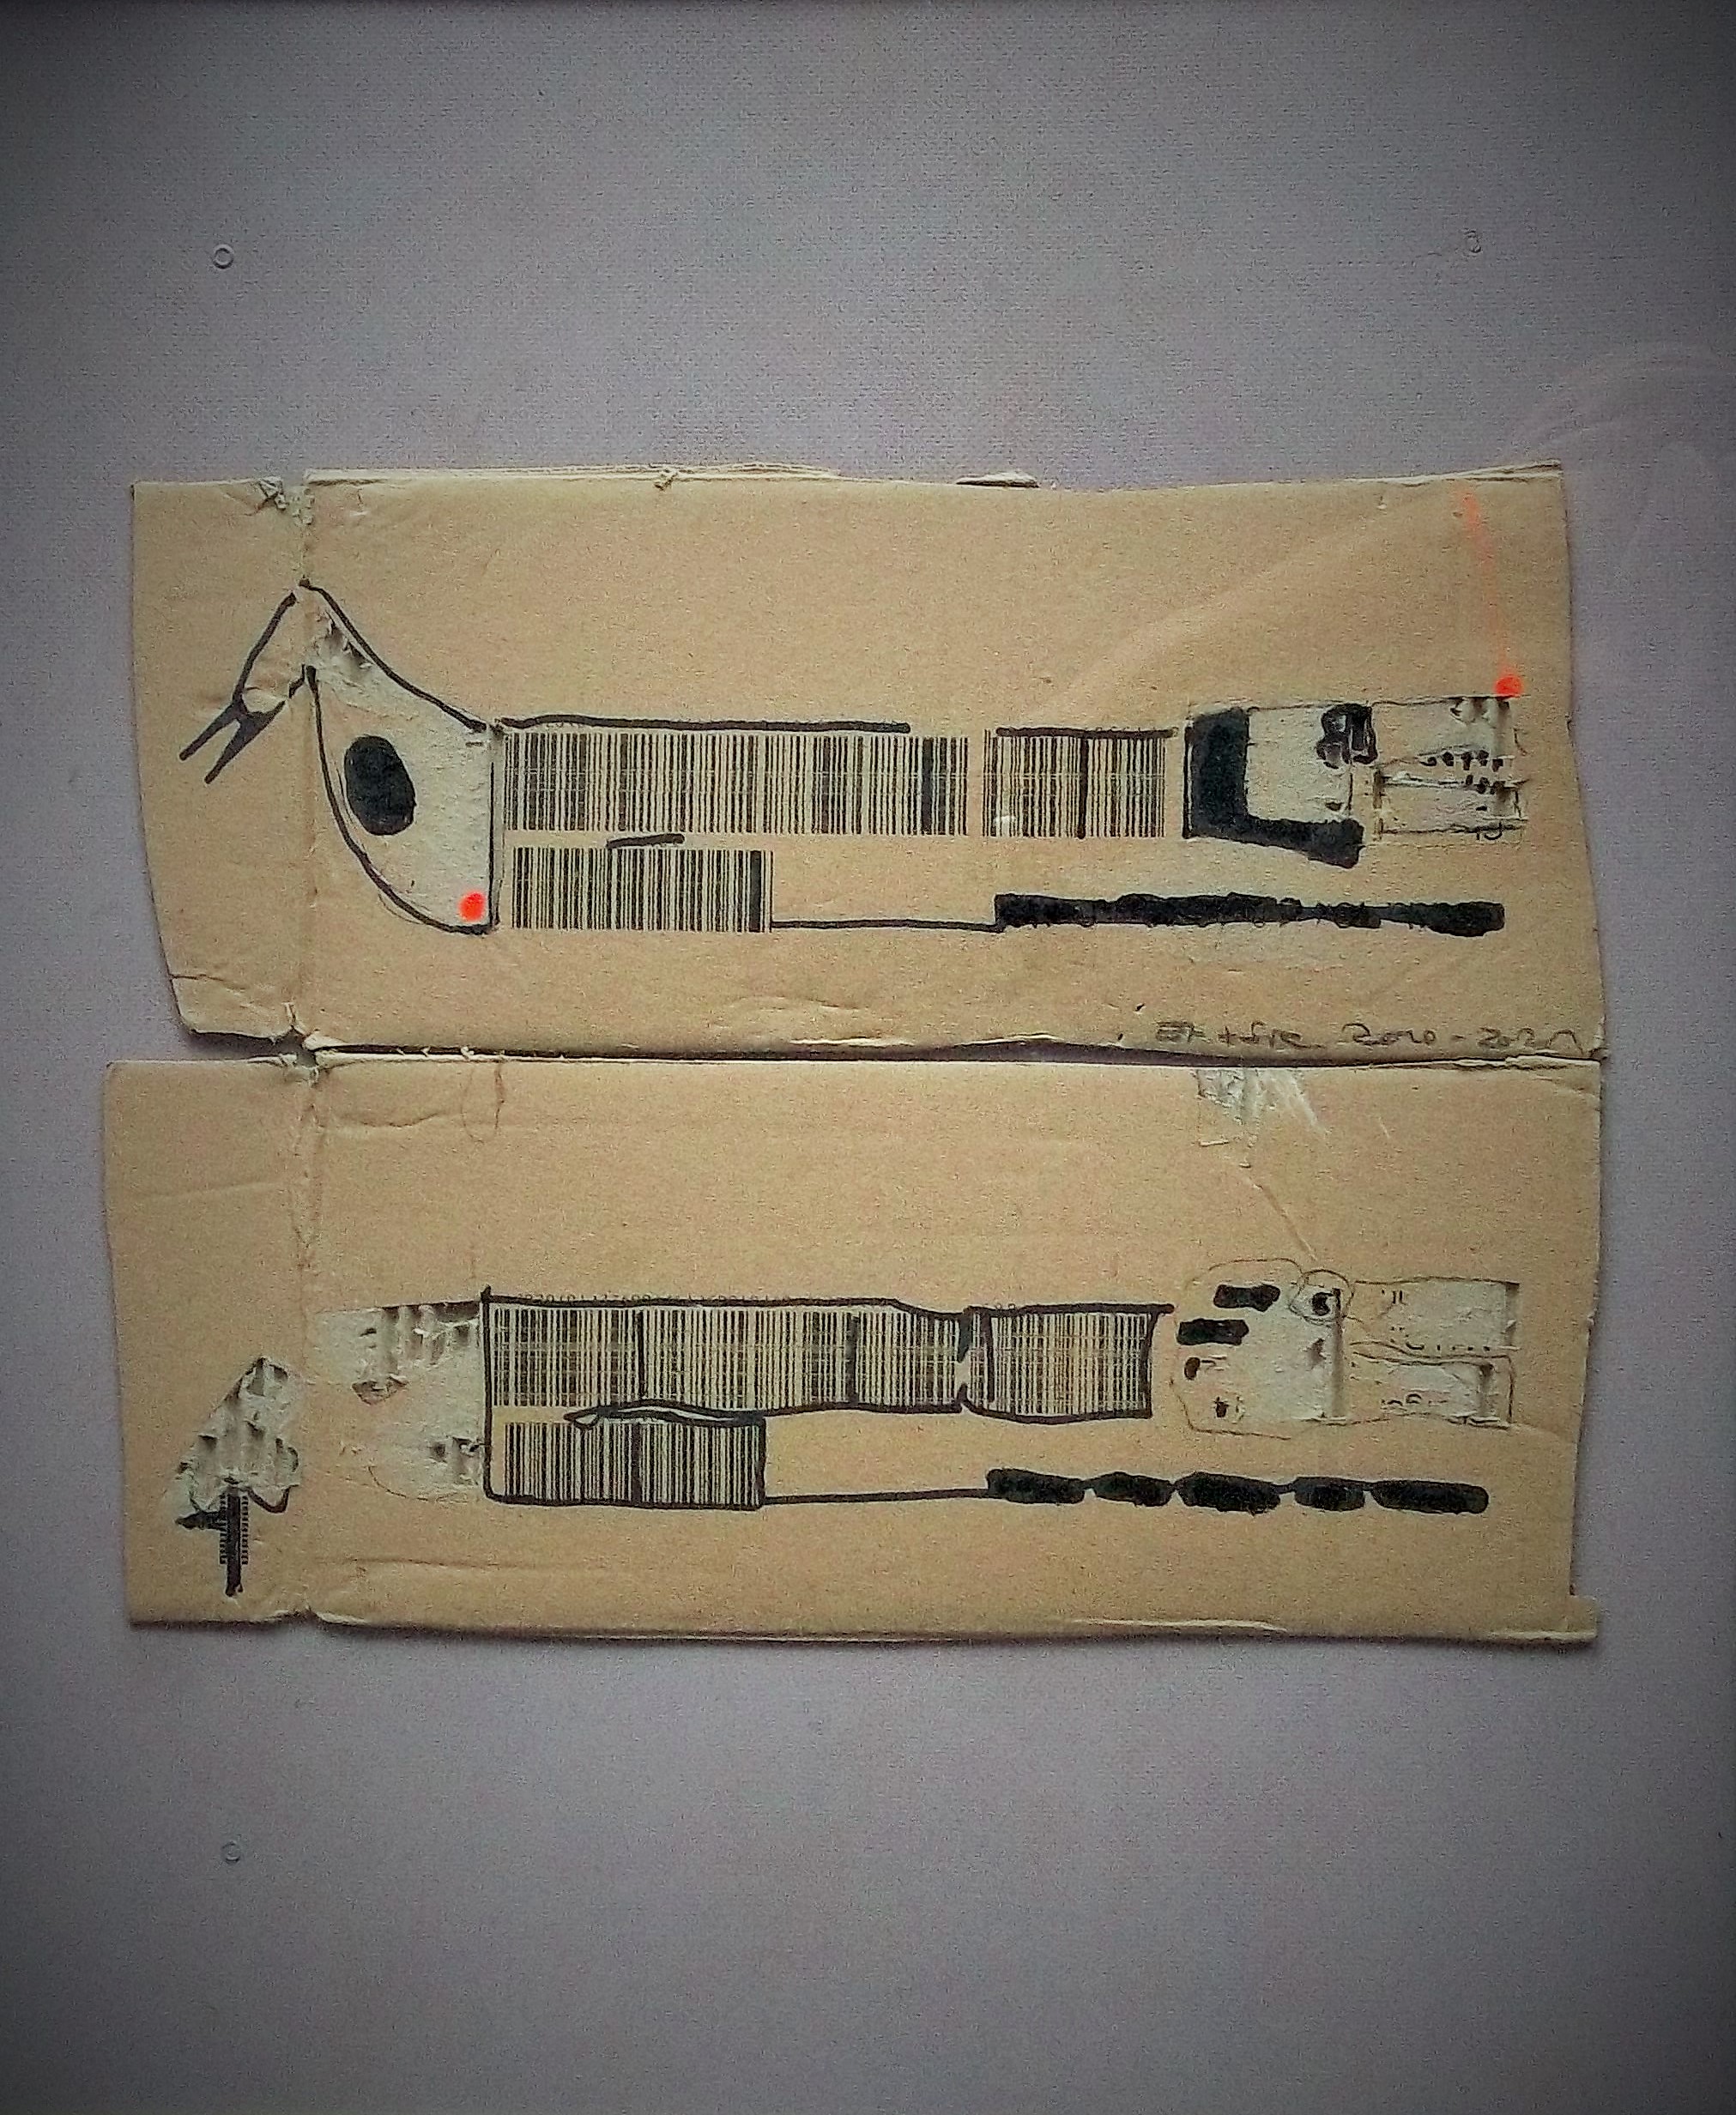 Er & Sie, 2021, Bleistift/Filzstift/Acrylfarbe auf Karton, akuell in der GKK e.V. im Kunst-Spektrum in Krefeld ausgestellt